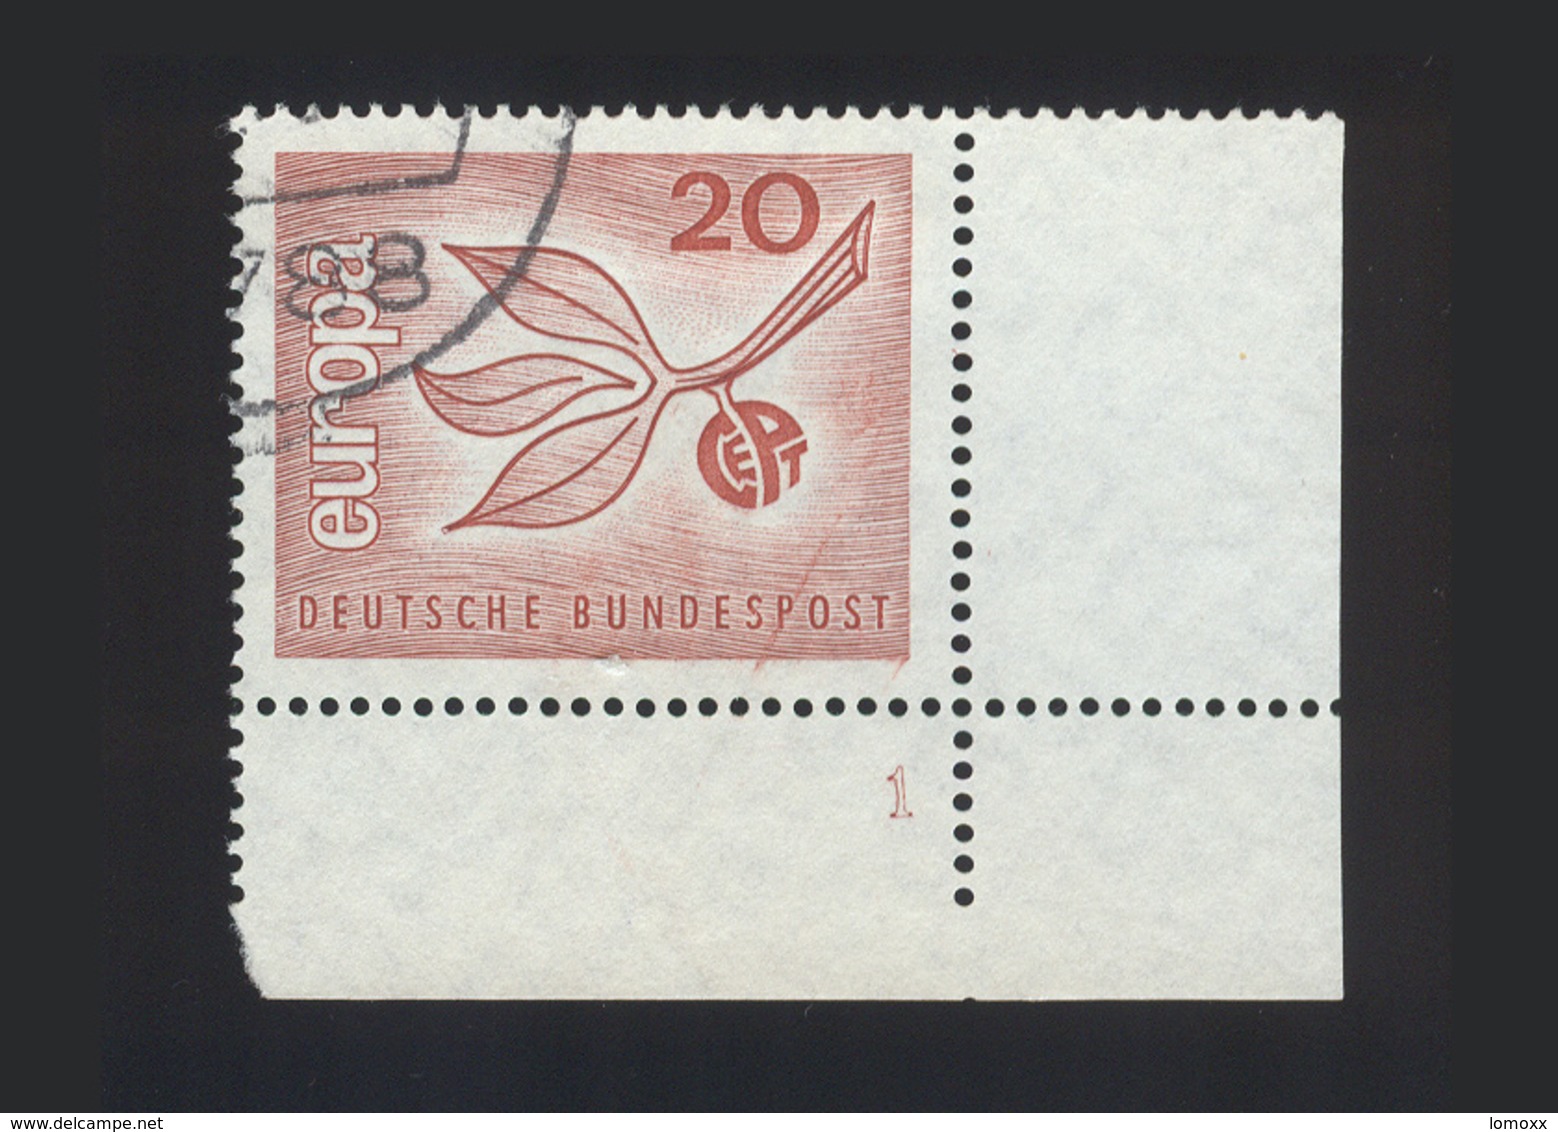 BRD 1965, Michel-Nr. 484, Europa 1965, 20 Pf., Eckrand Rechts Unten Mit Formnummer 1, Gestempelt, Siehe Foto - Gebraucht